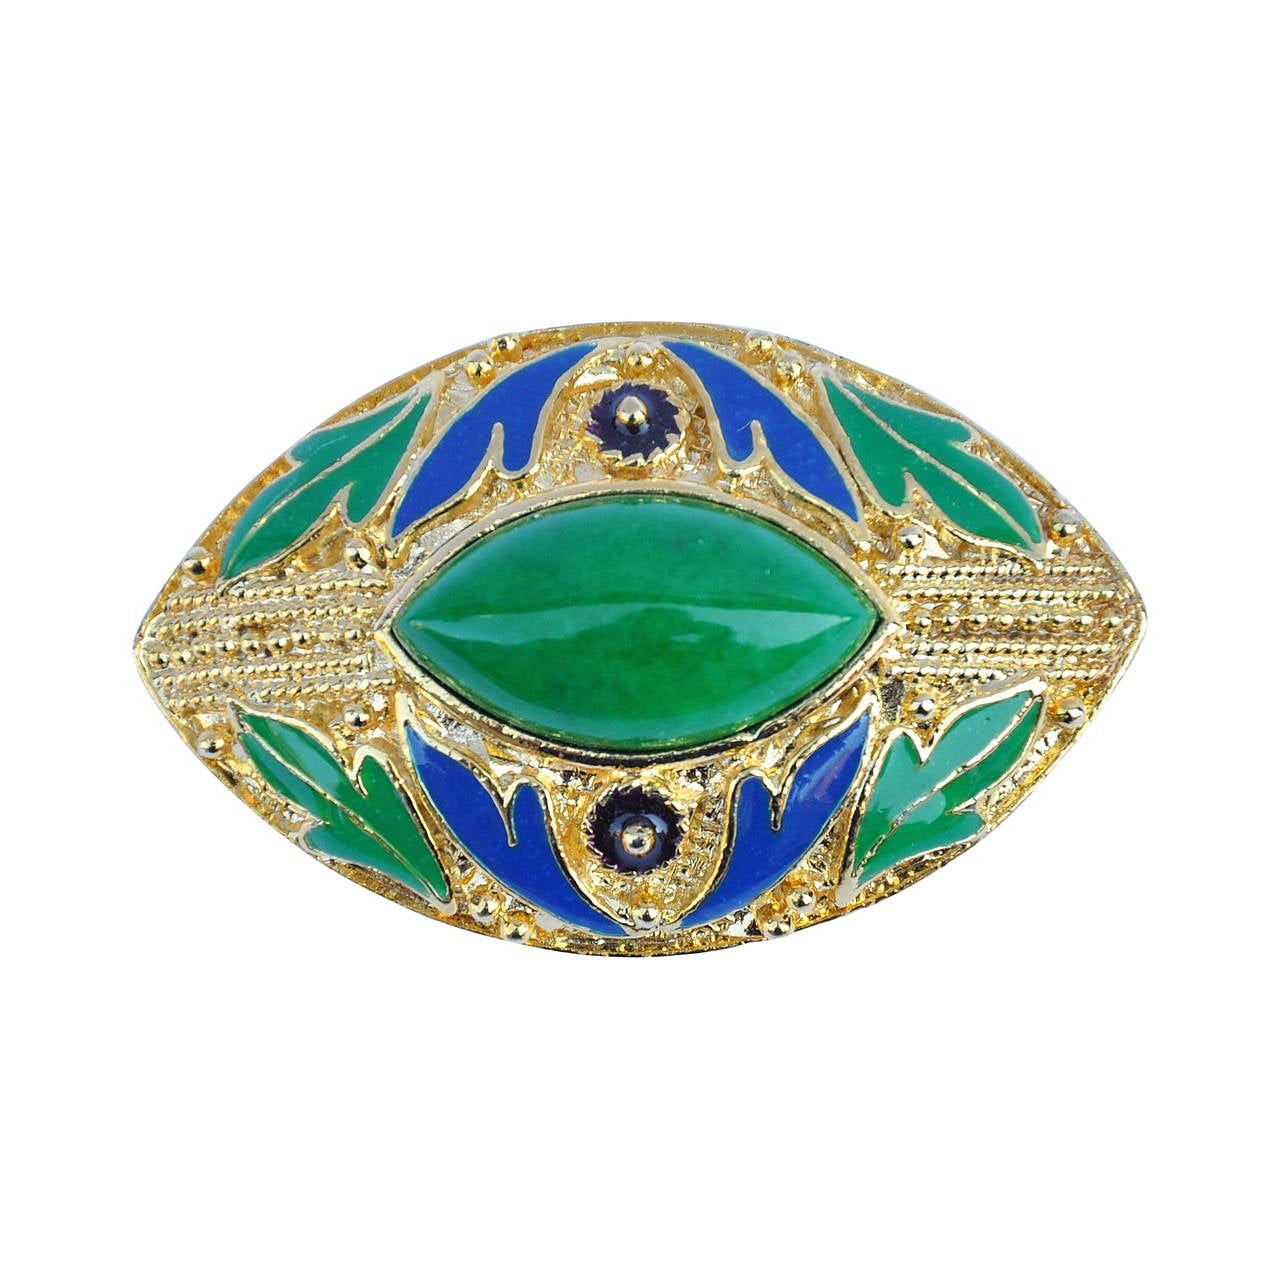 Brosche aus Gold mit blauer und grüner Emaille, akzentuiert mit großen Jadeitsteinen